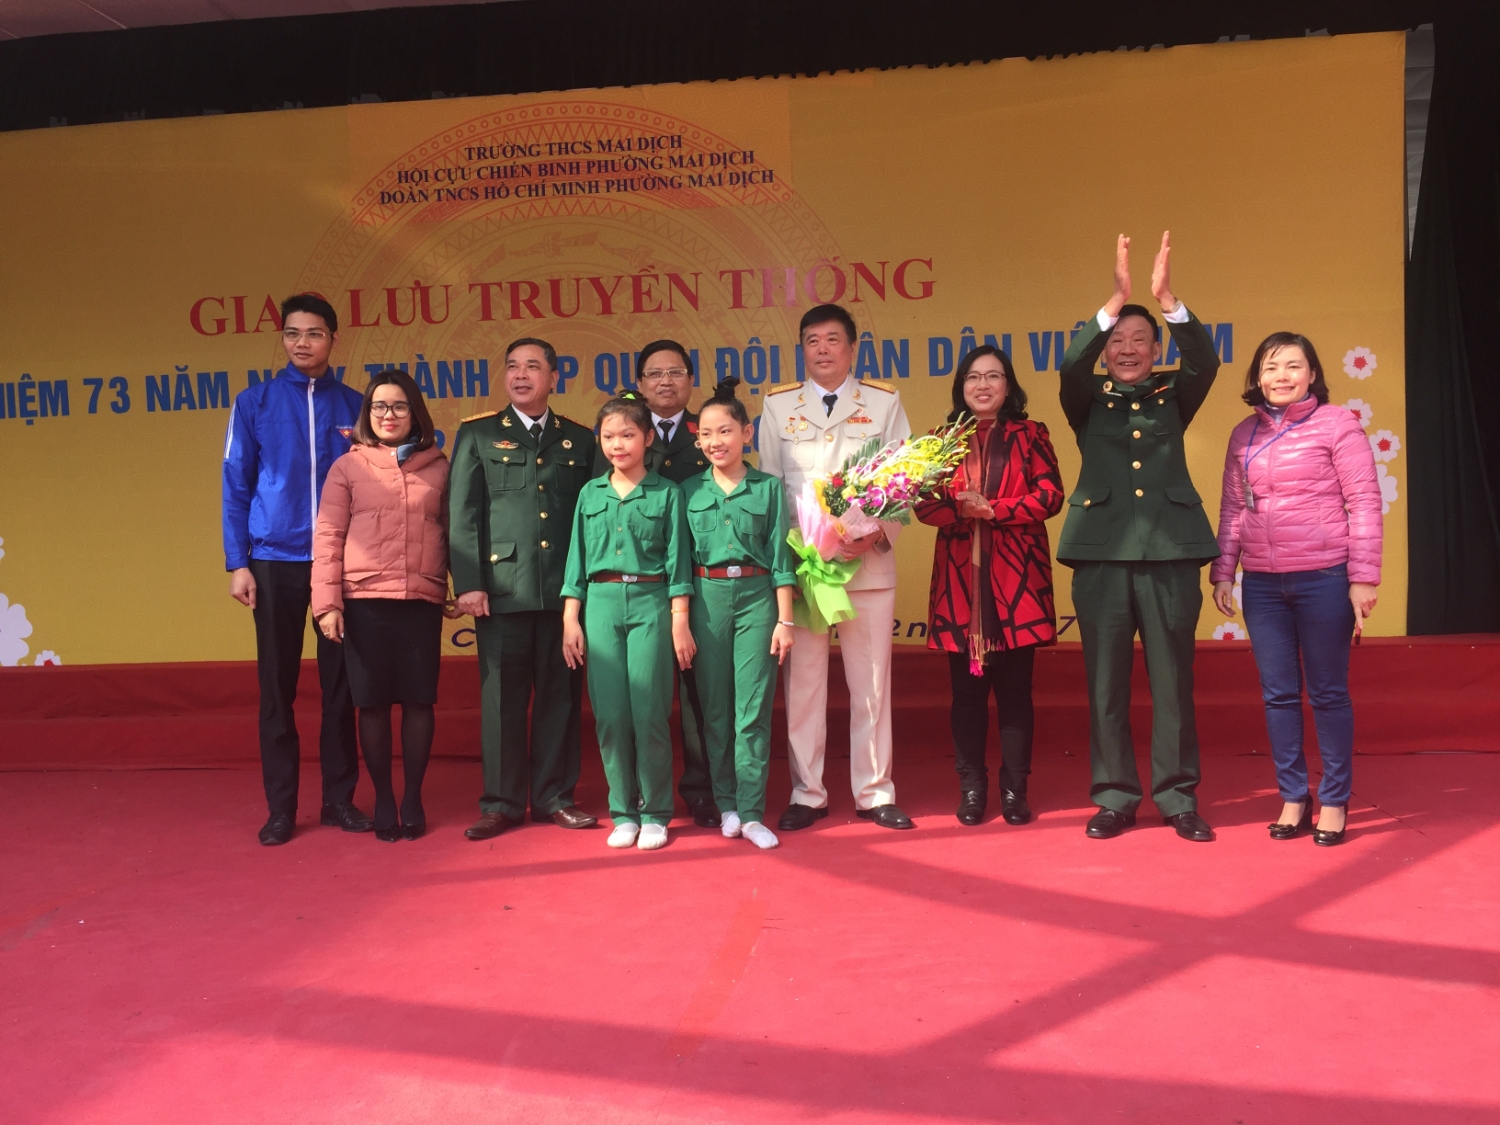 Giao lưu truyền thống - Kỉ niệm 73 năm Ngày thành lập Quân đội nhân dân Việt Nam